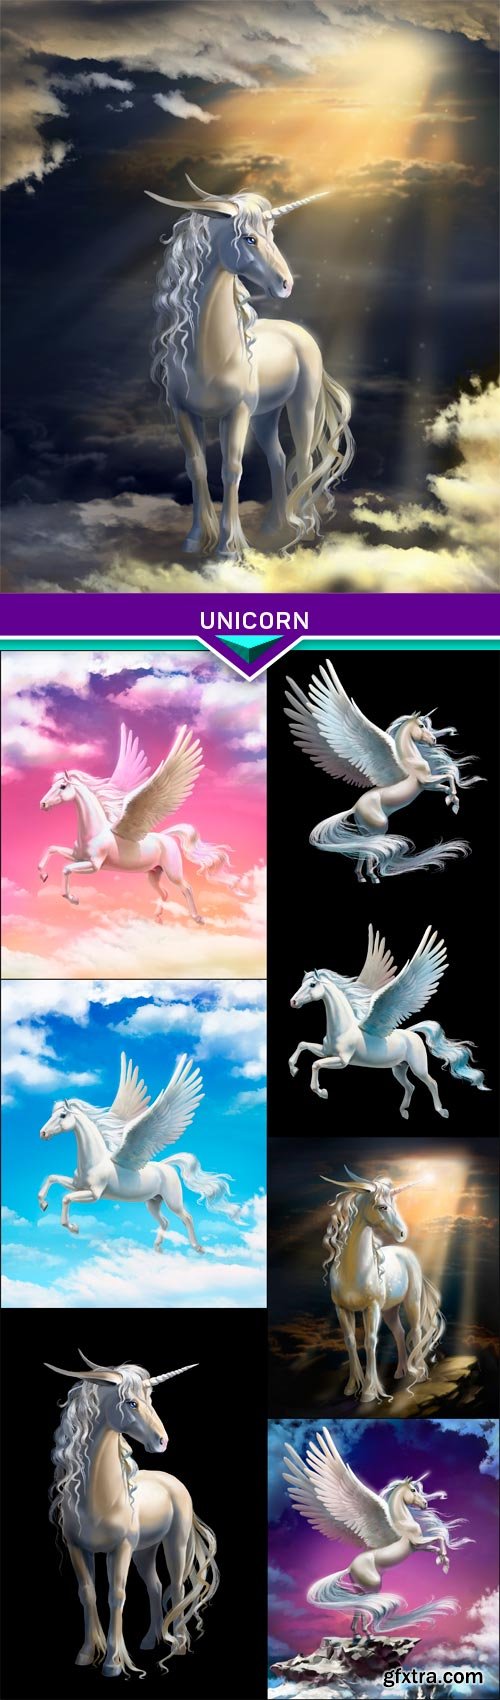 Unicorn 8X JPEG